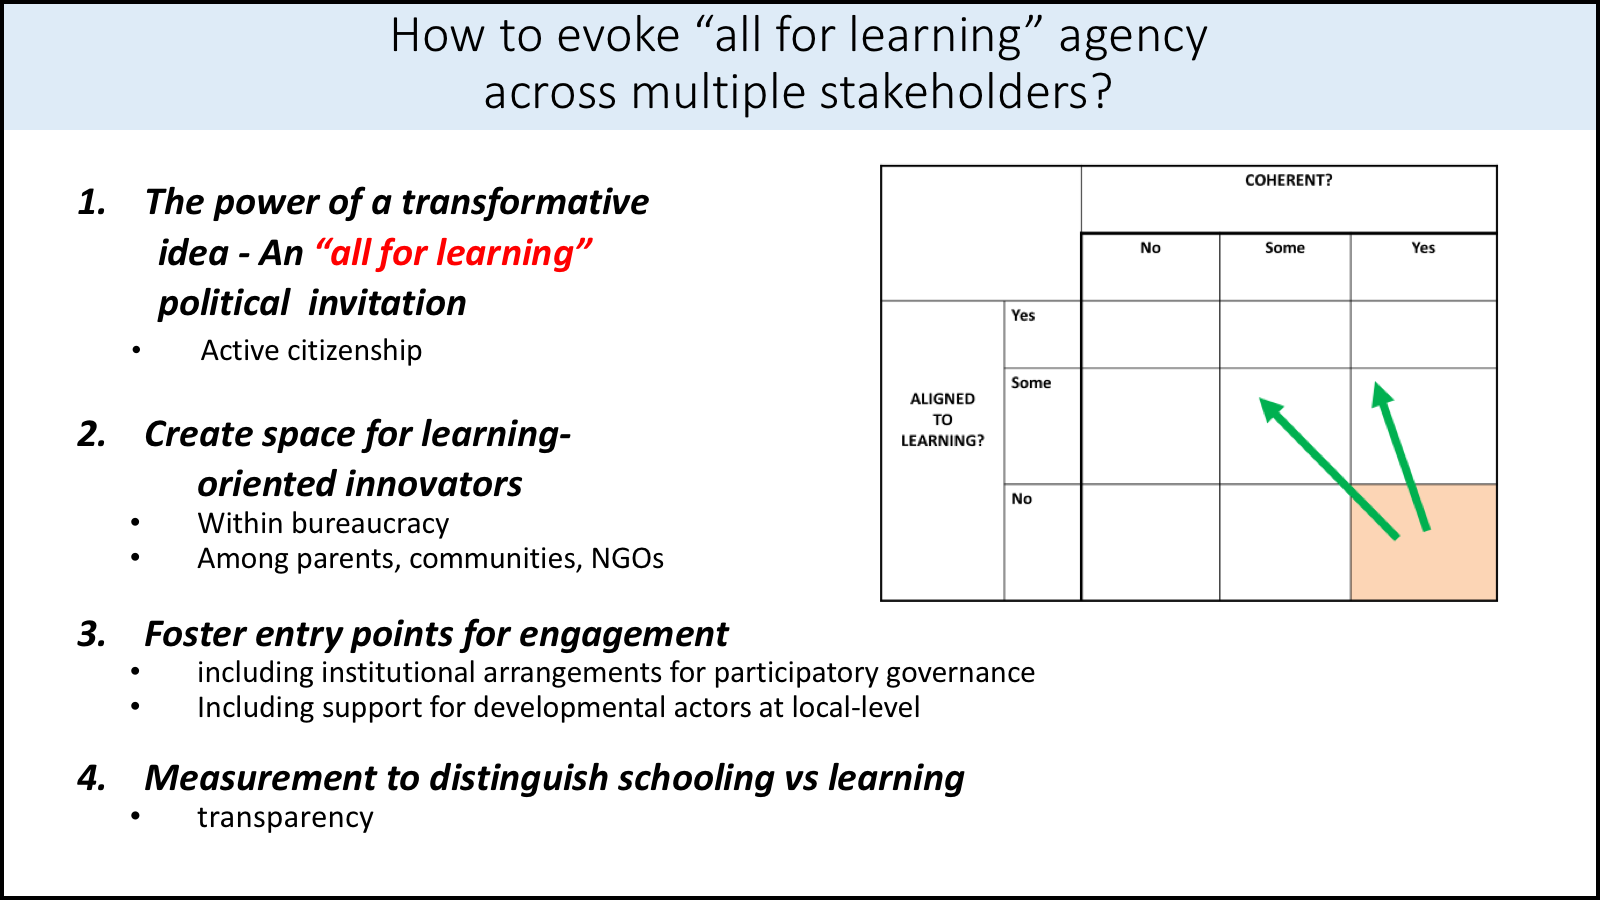 All for learning across multiple stakeholders